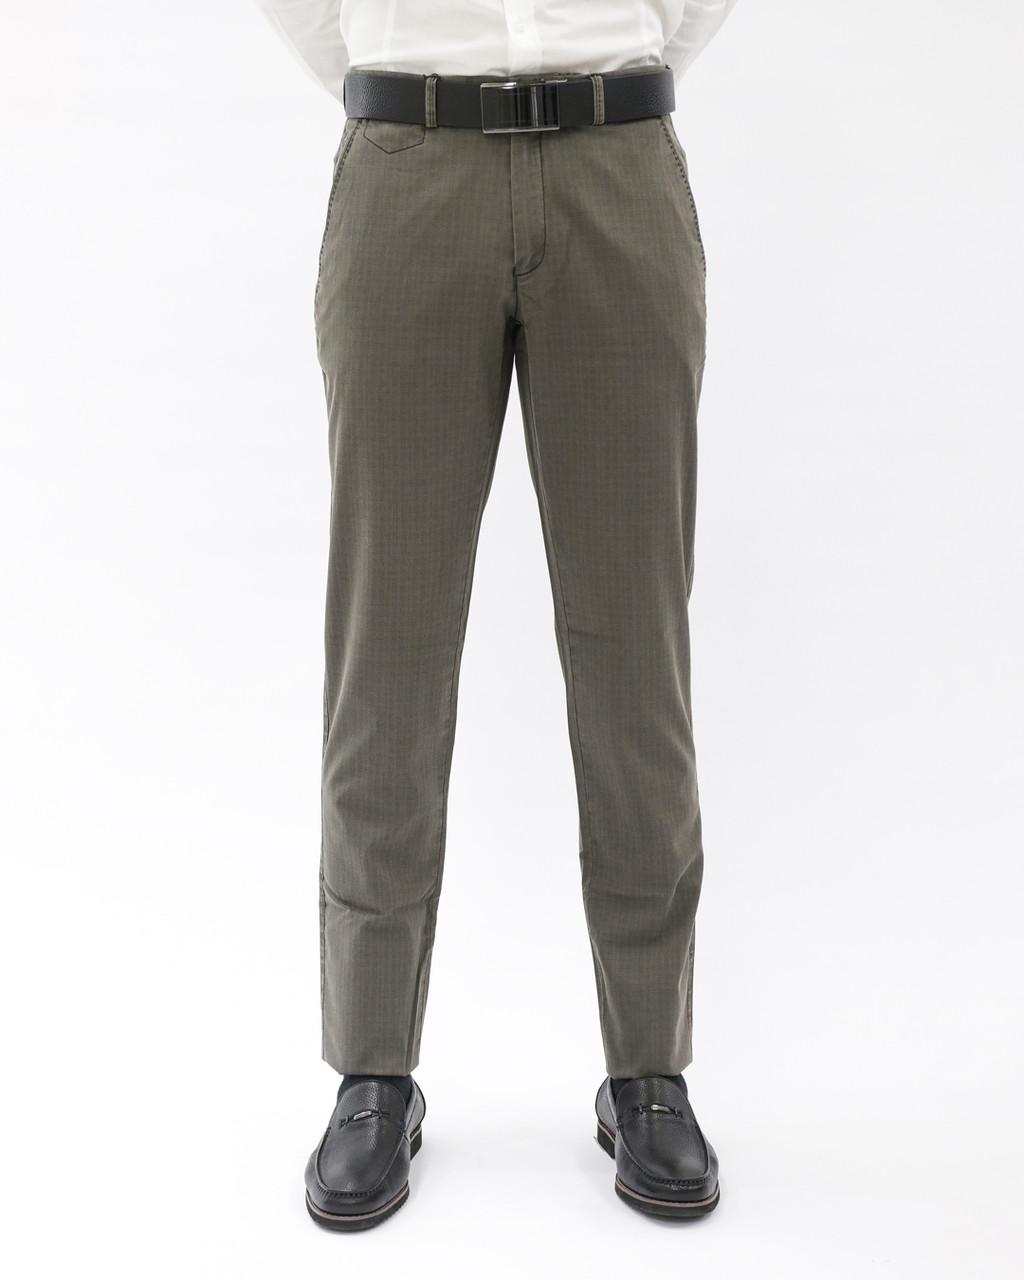 Мужские повседневные брюки «UM&H 561010434» коричневый, фото 1